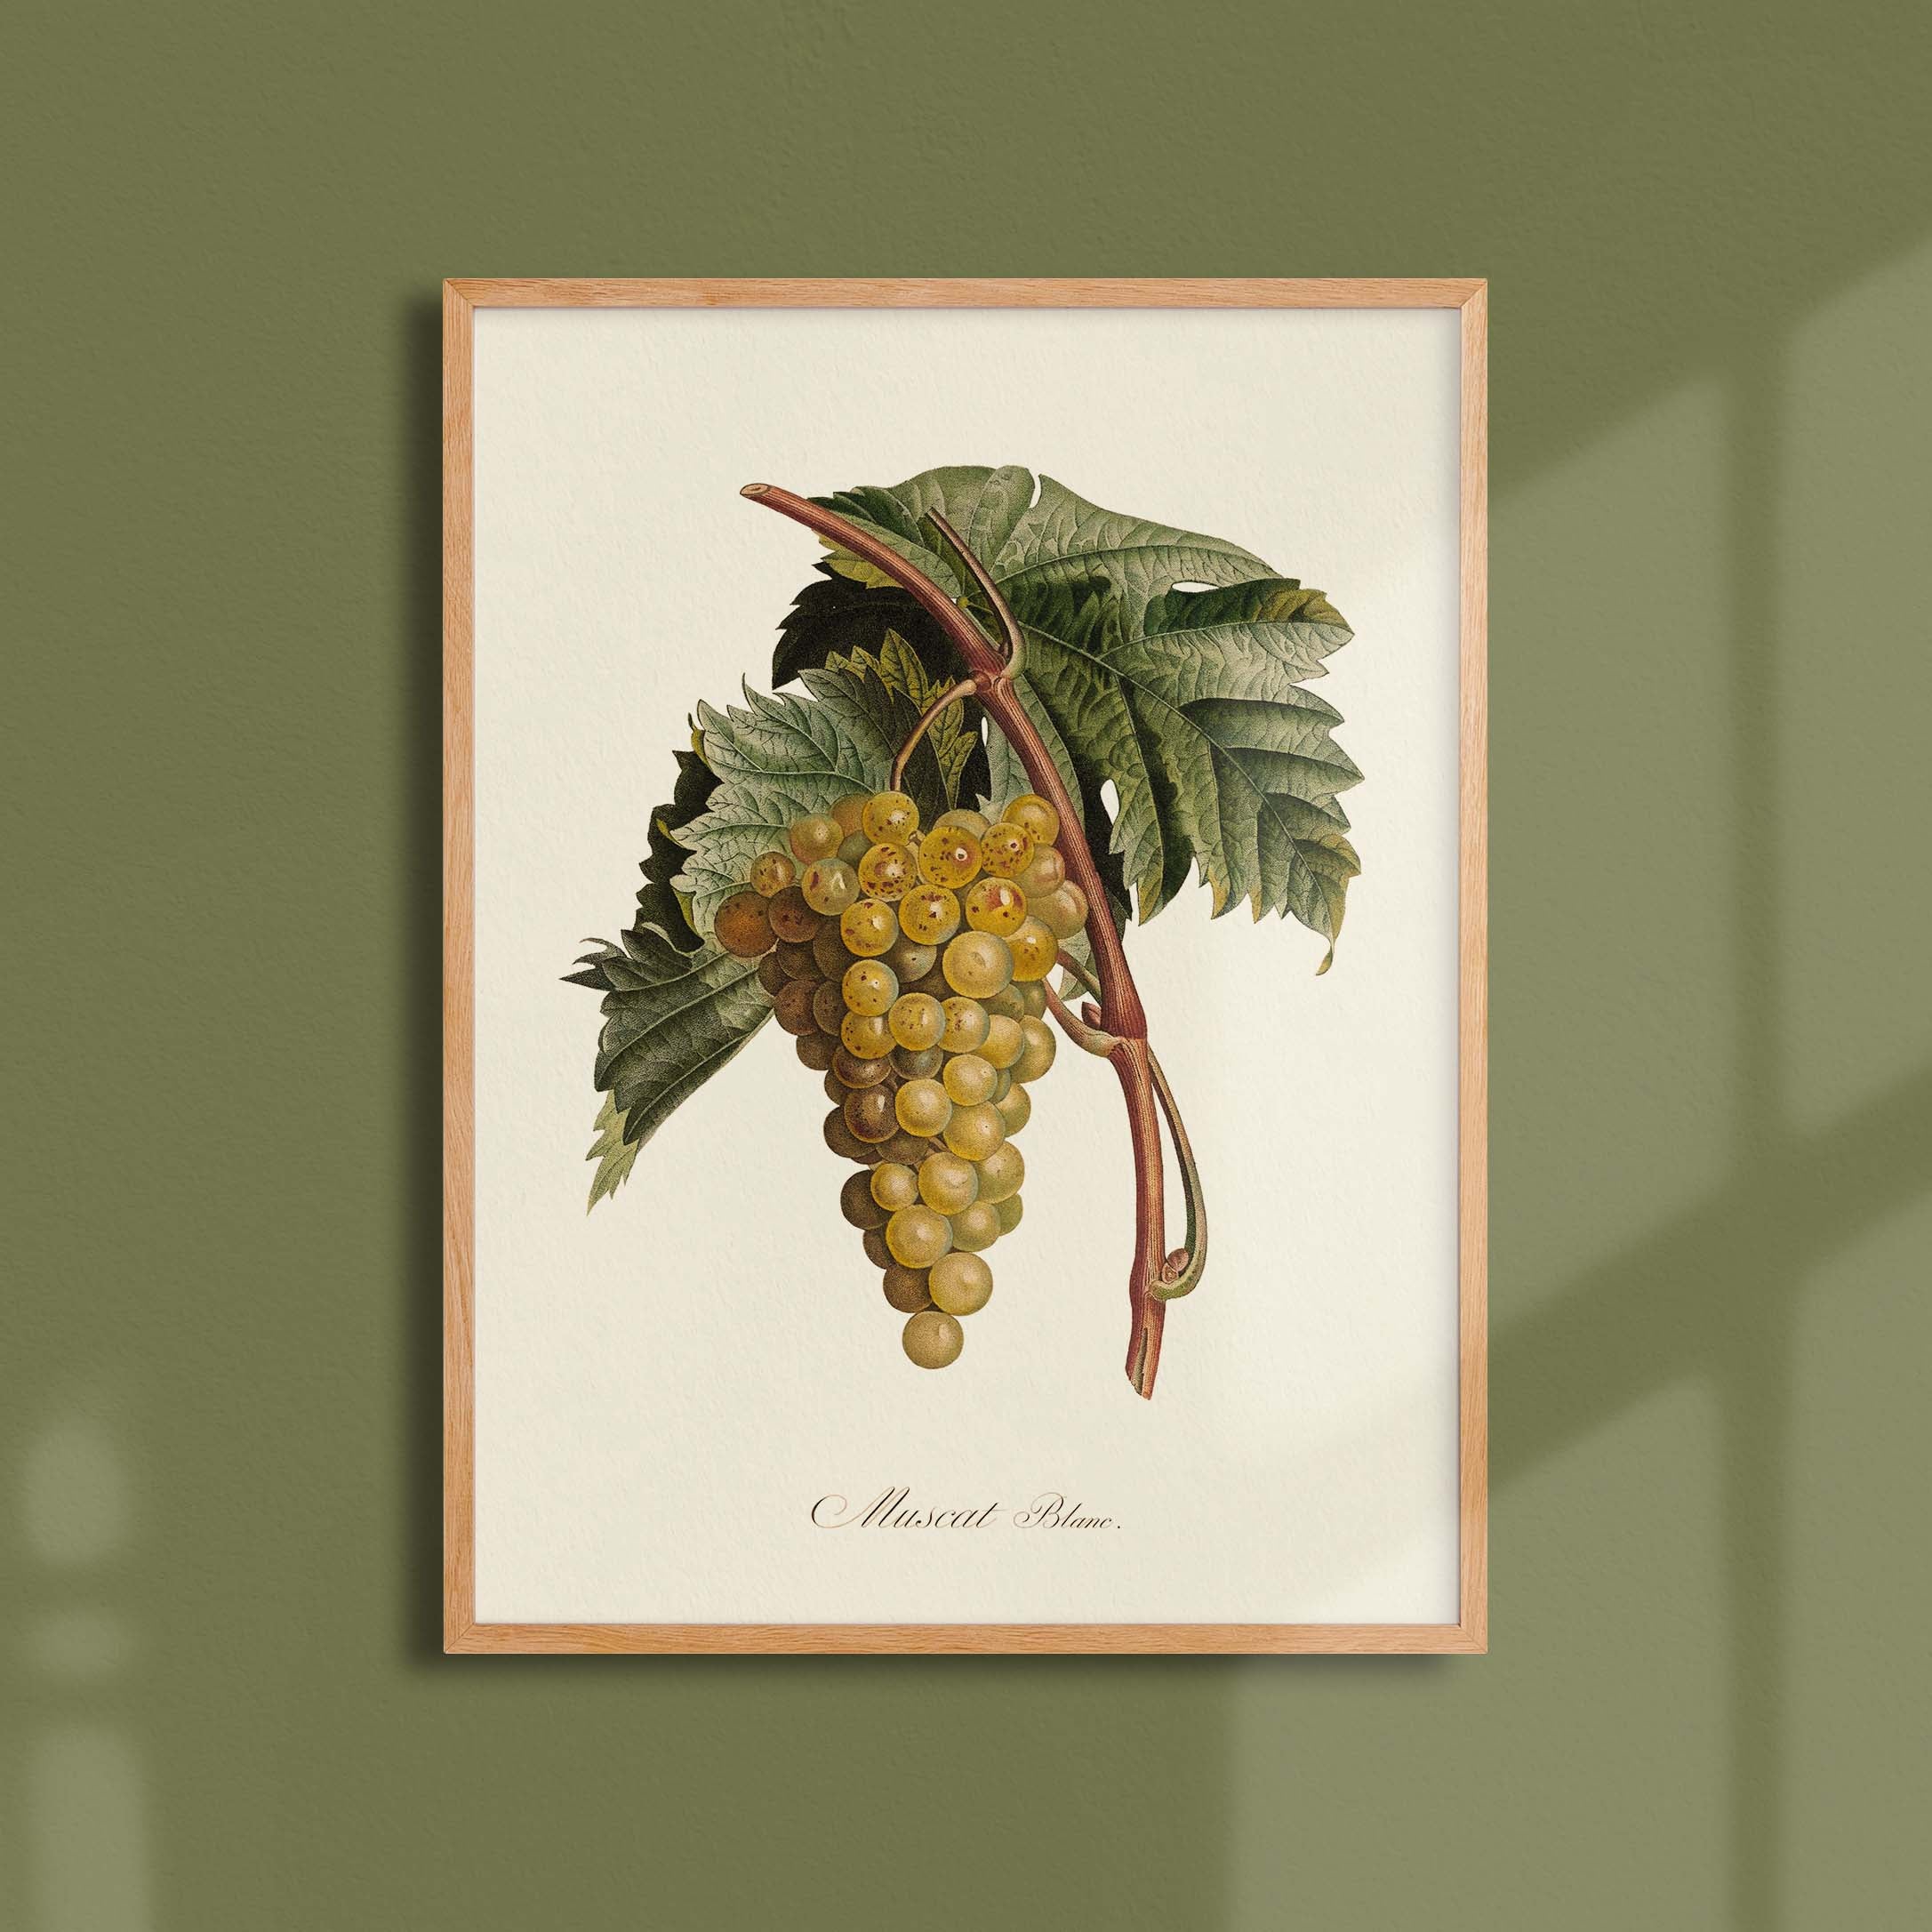 Planche botanique fruit - Muscat blanc-oneart.fr